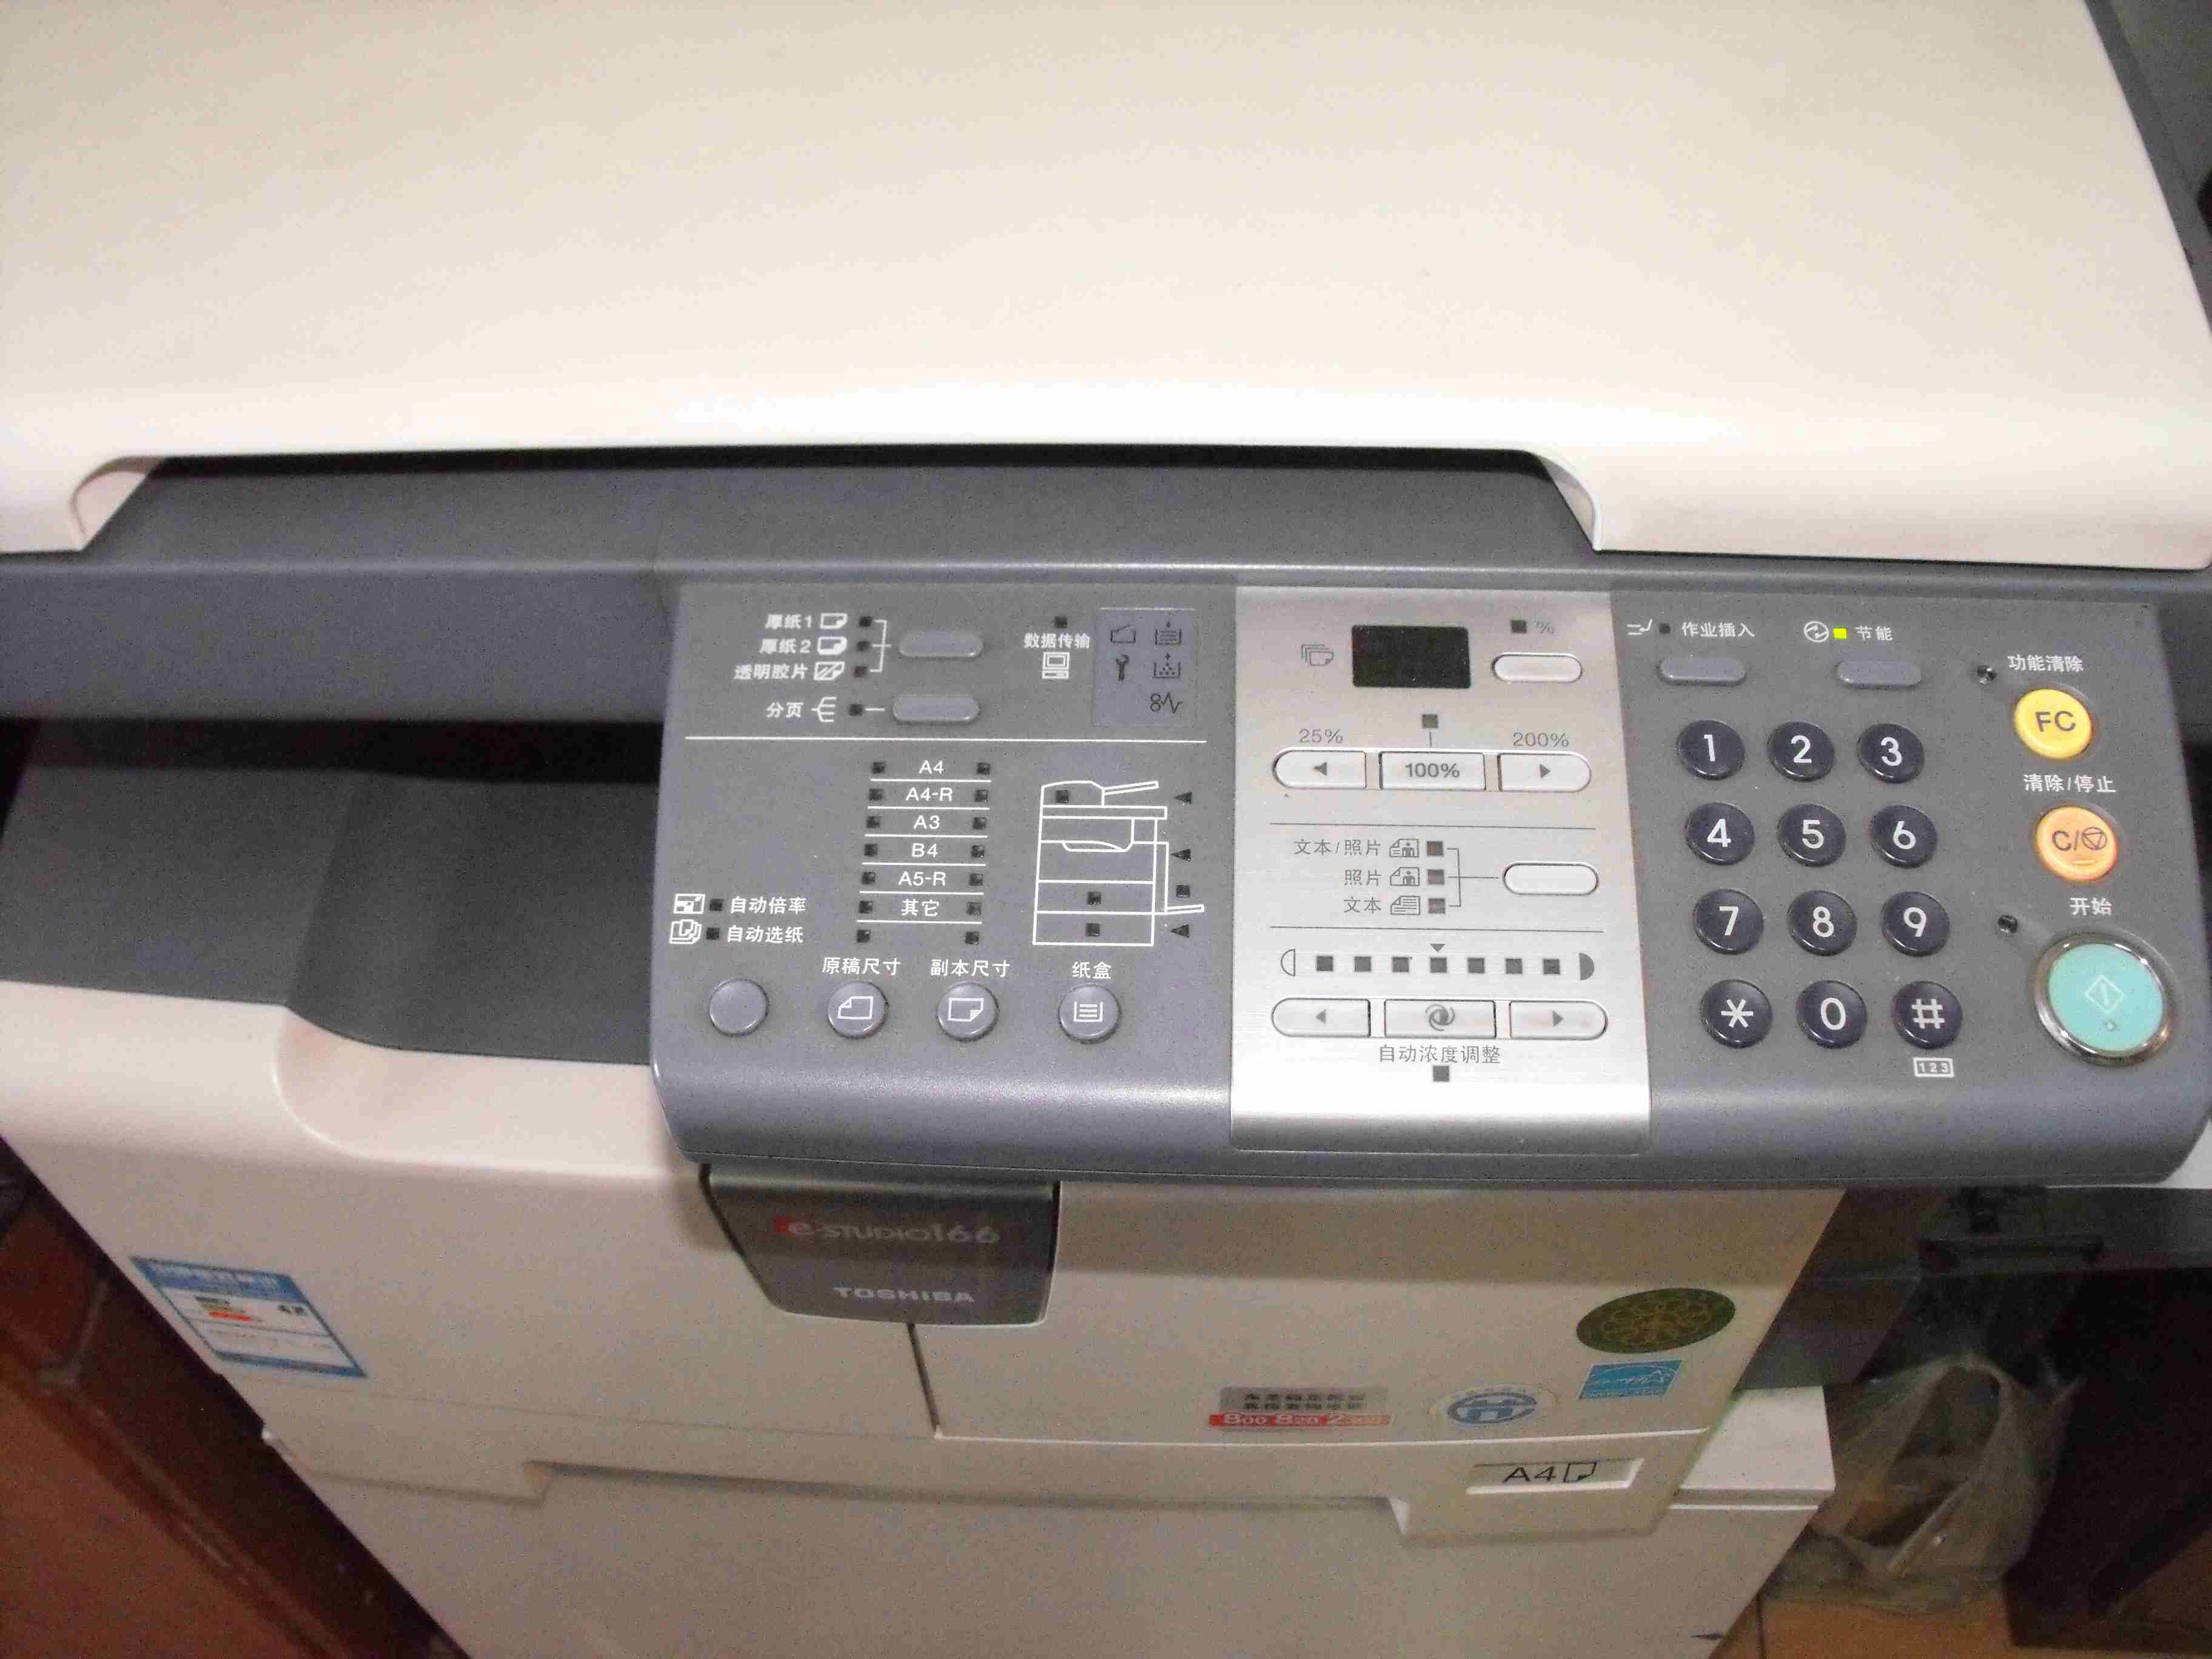 傳真機怎麼連接電腦當打印機用呢，急用？？